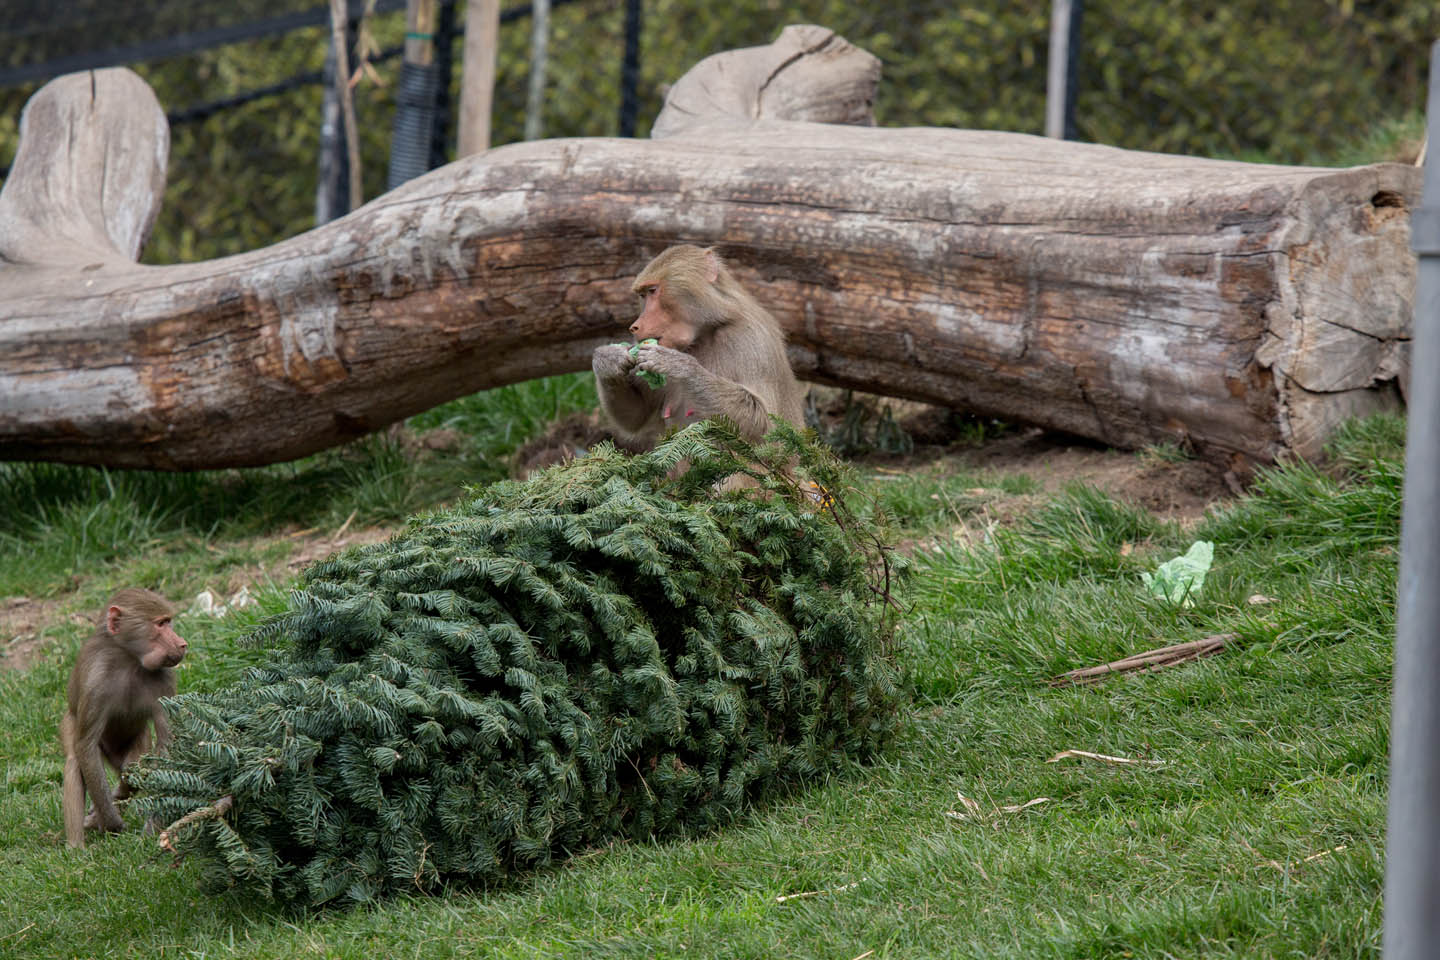 (photo courtesy Steve Goodall, Oakland Zoo)